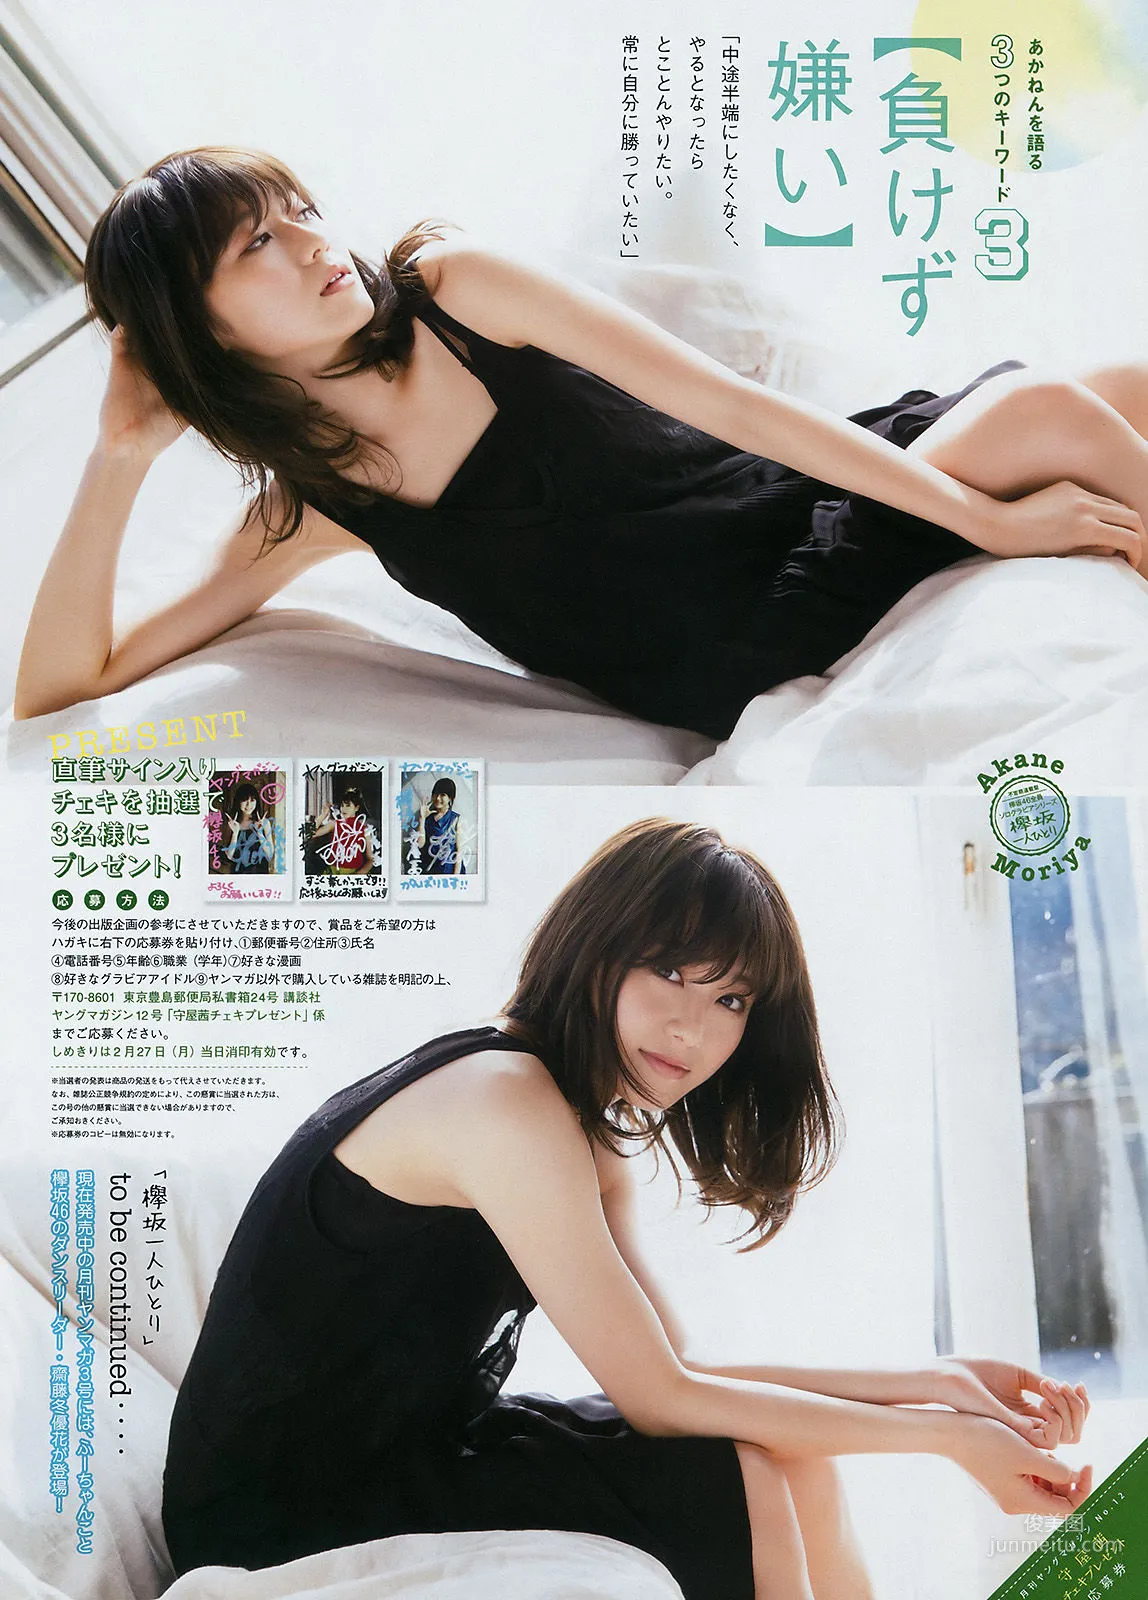 [Young Magazine] 筧美和子 守屋茜 2017年No.12 写真杂志11